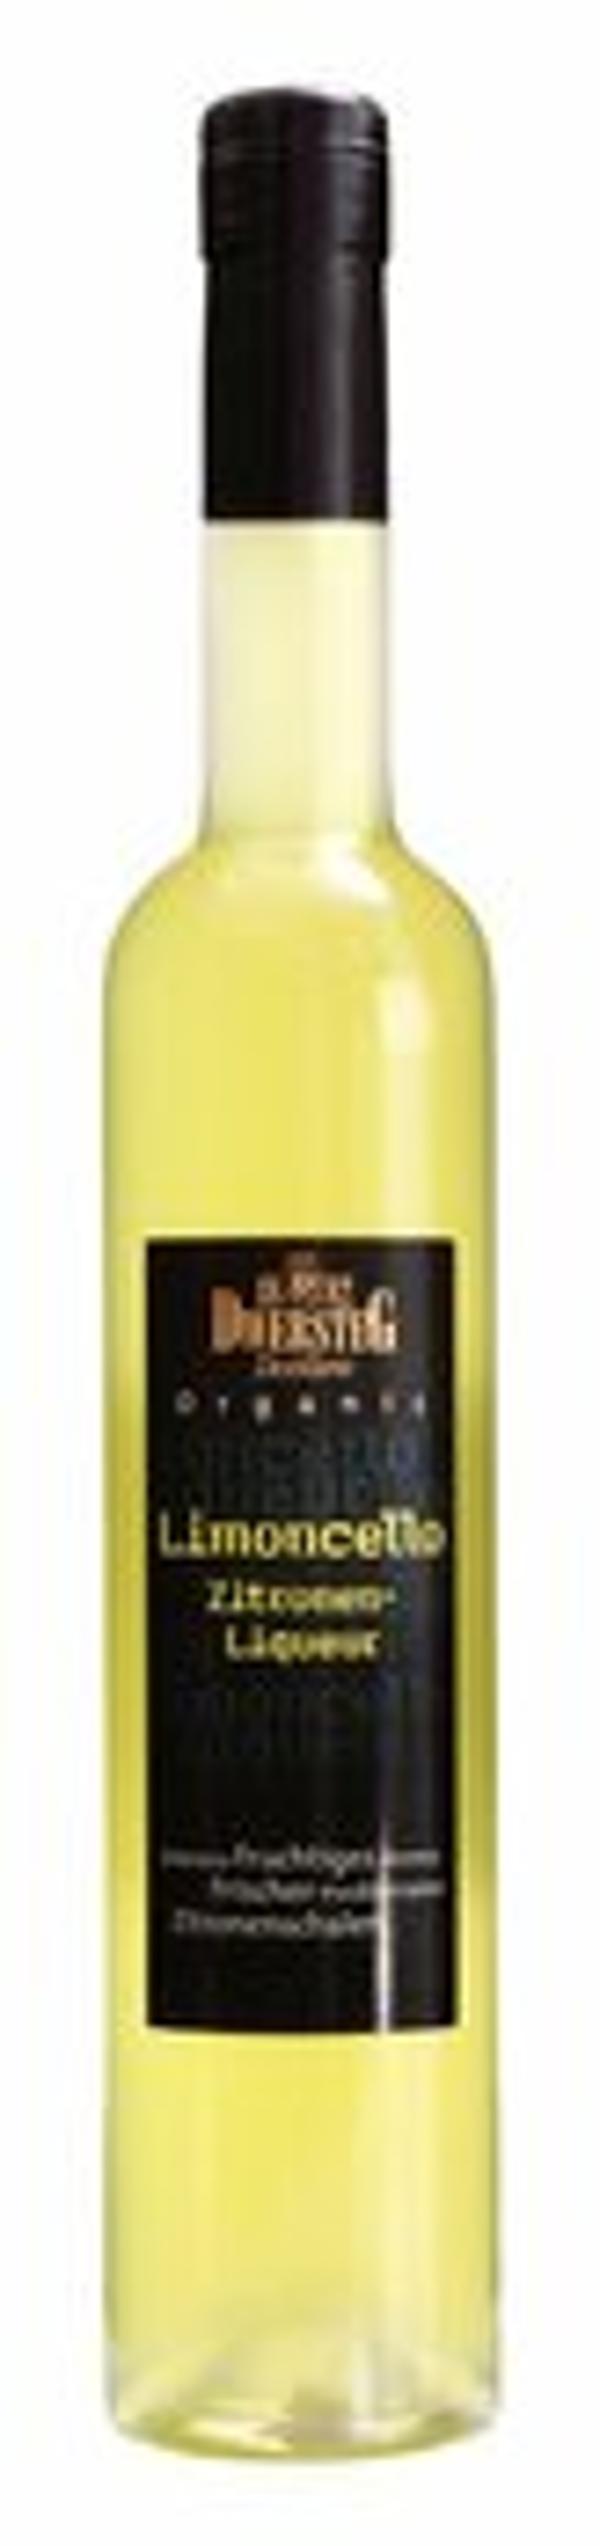 Produktfoto zu Limoncello-Liqueur 0,5l